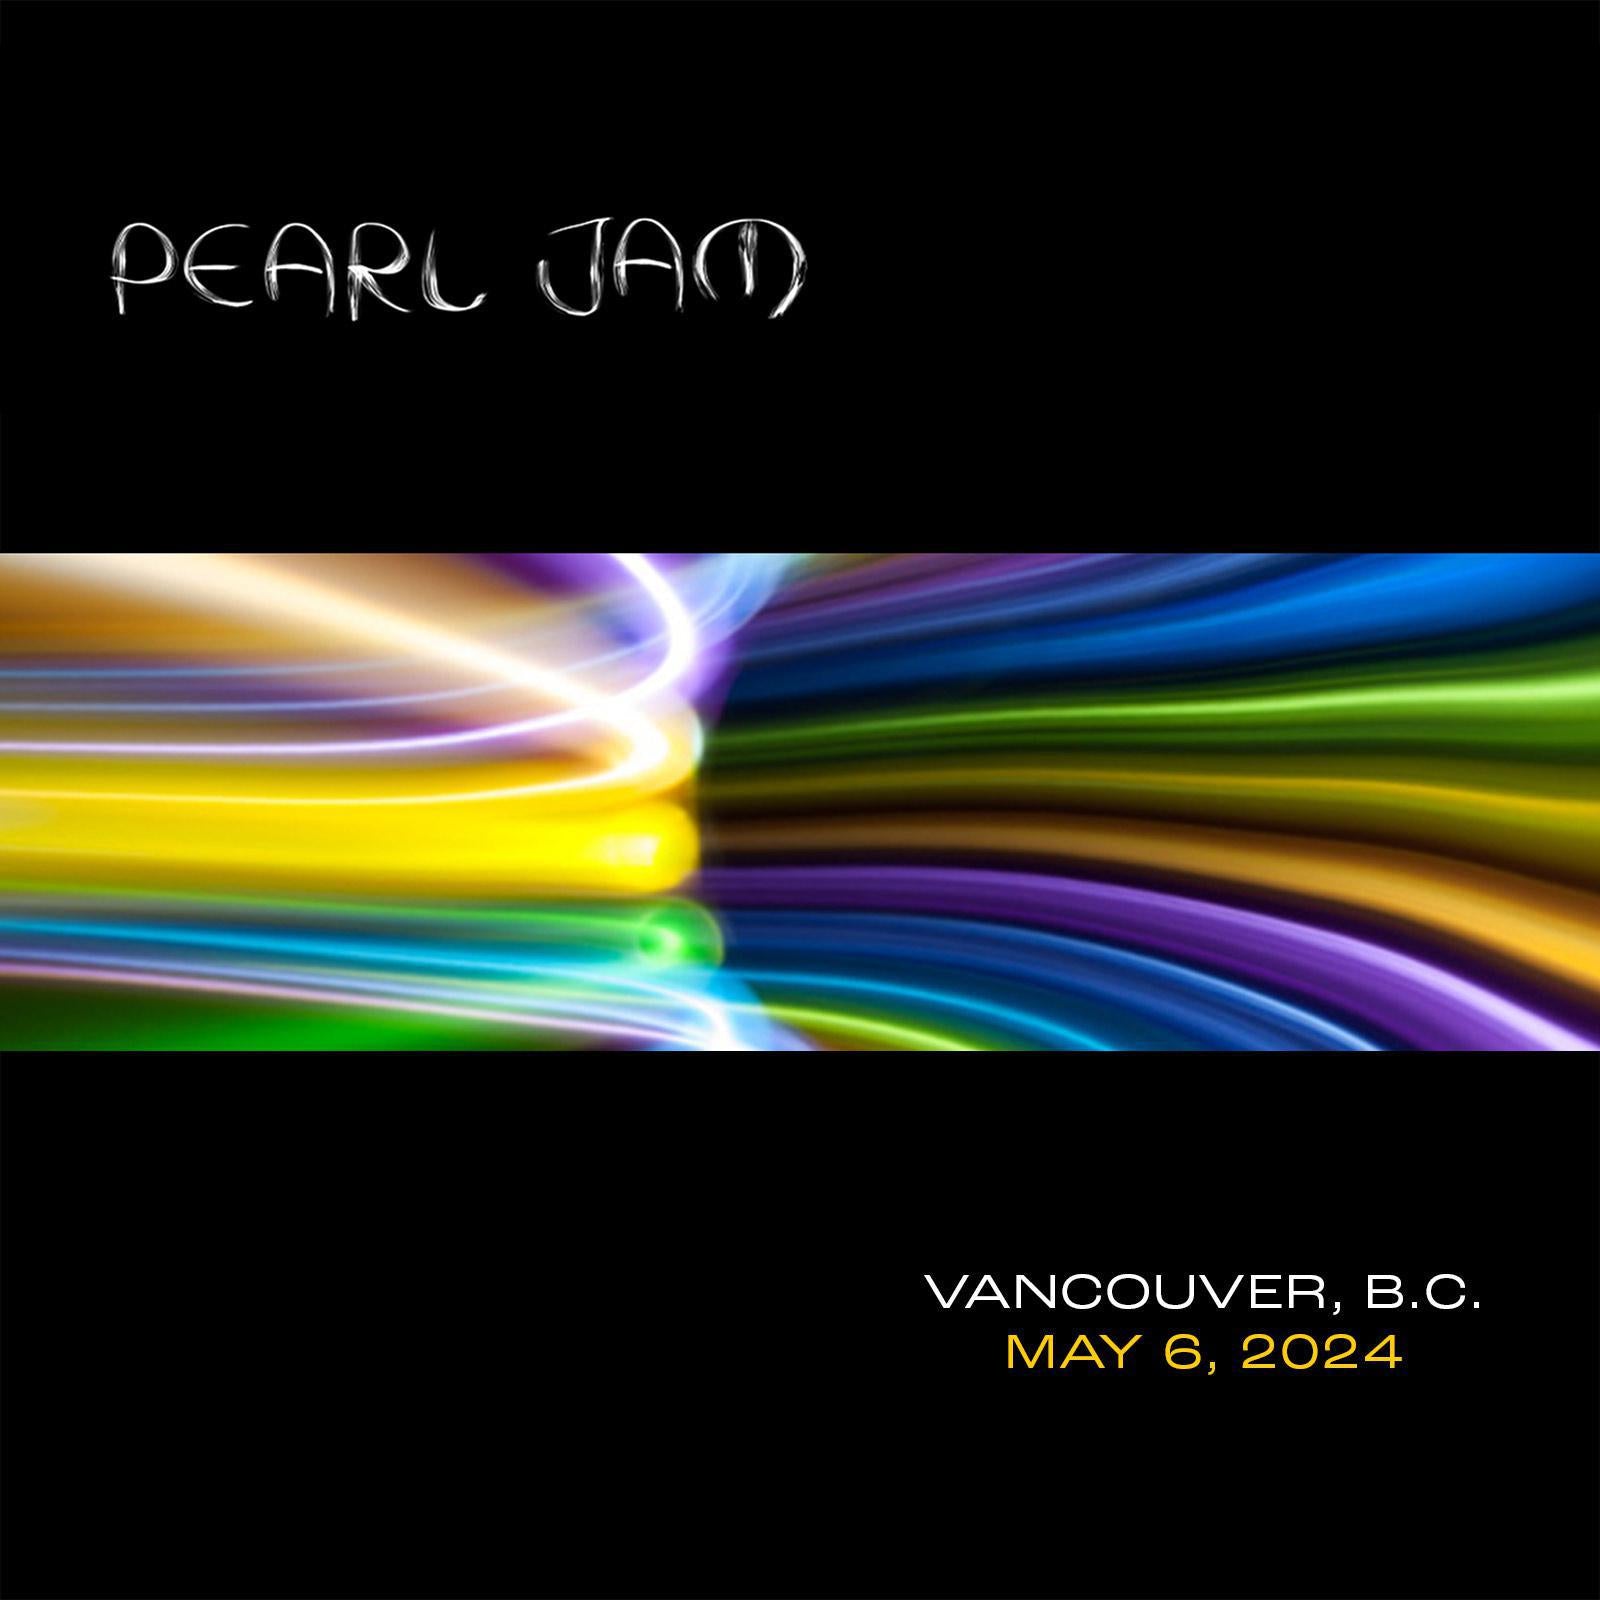 Vancouver 5/6/2024 Bootleg CD